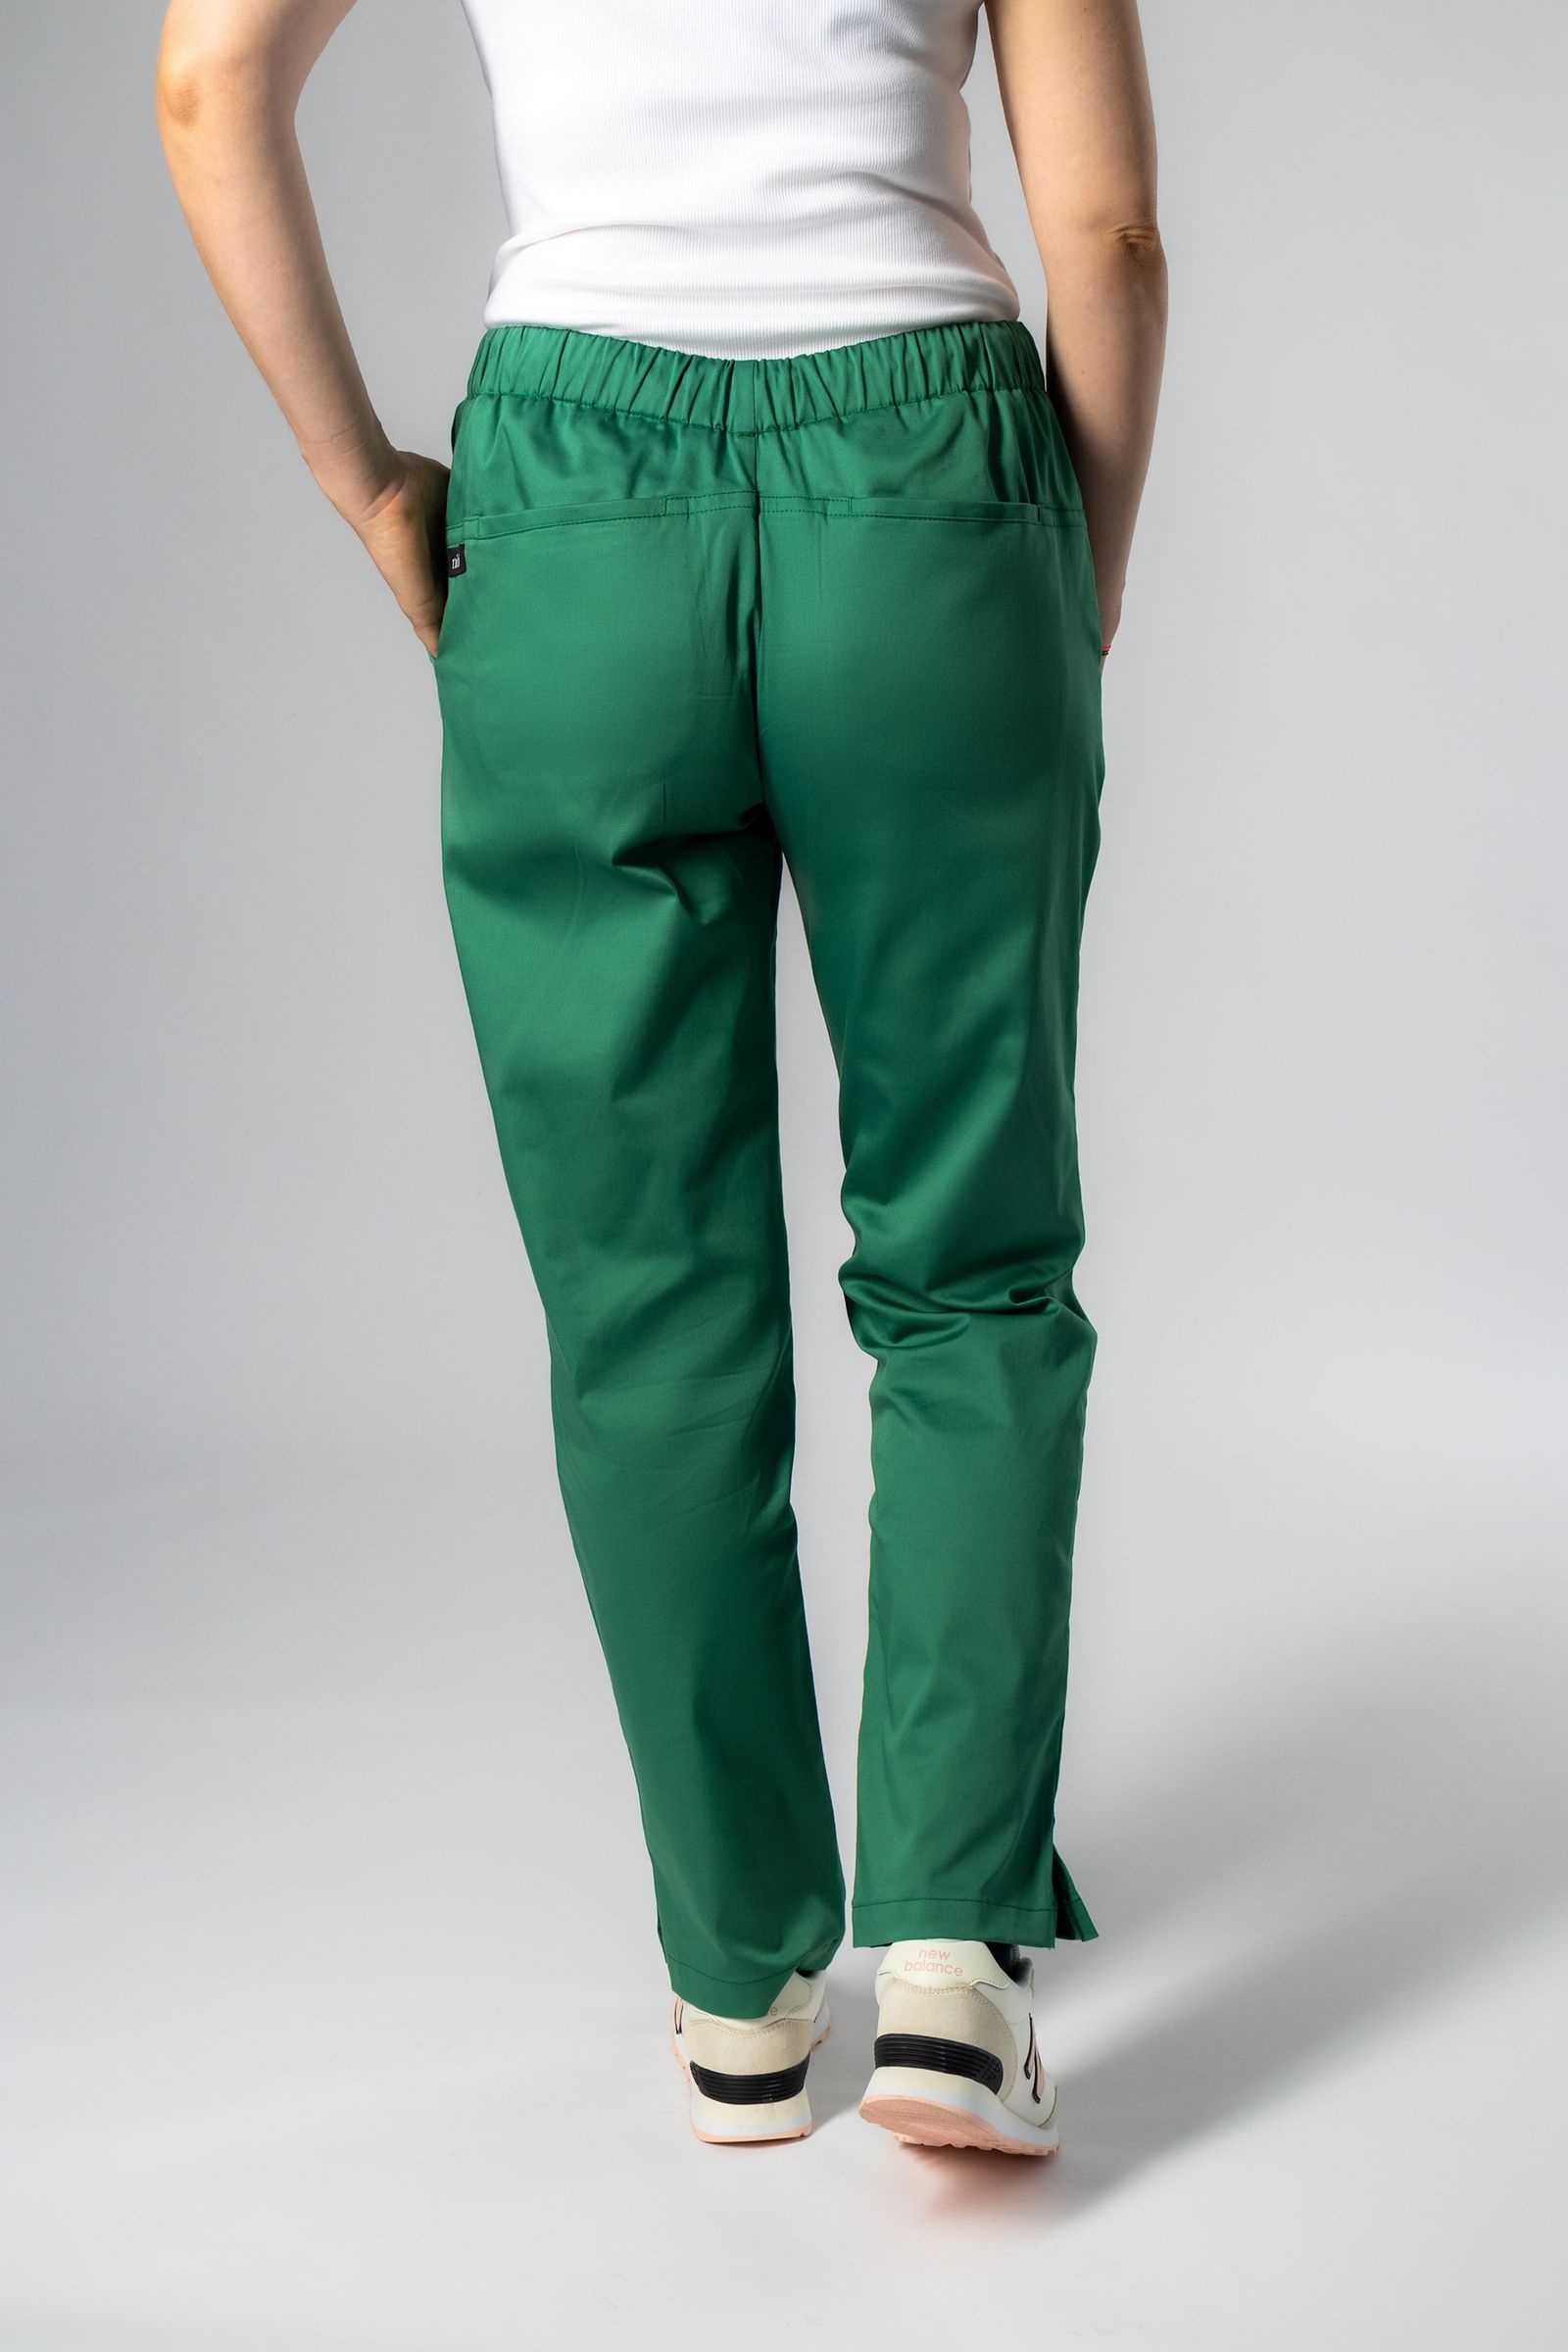 ash zöld női orvosi nadrág 2